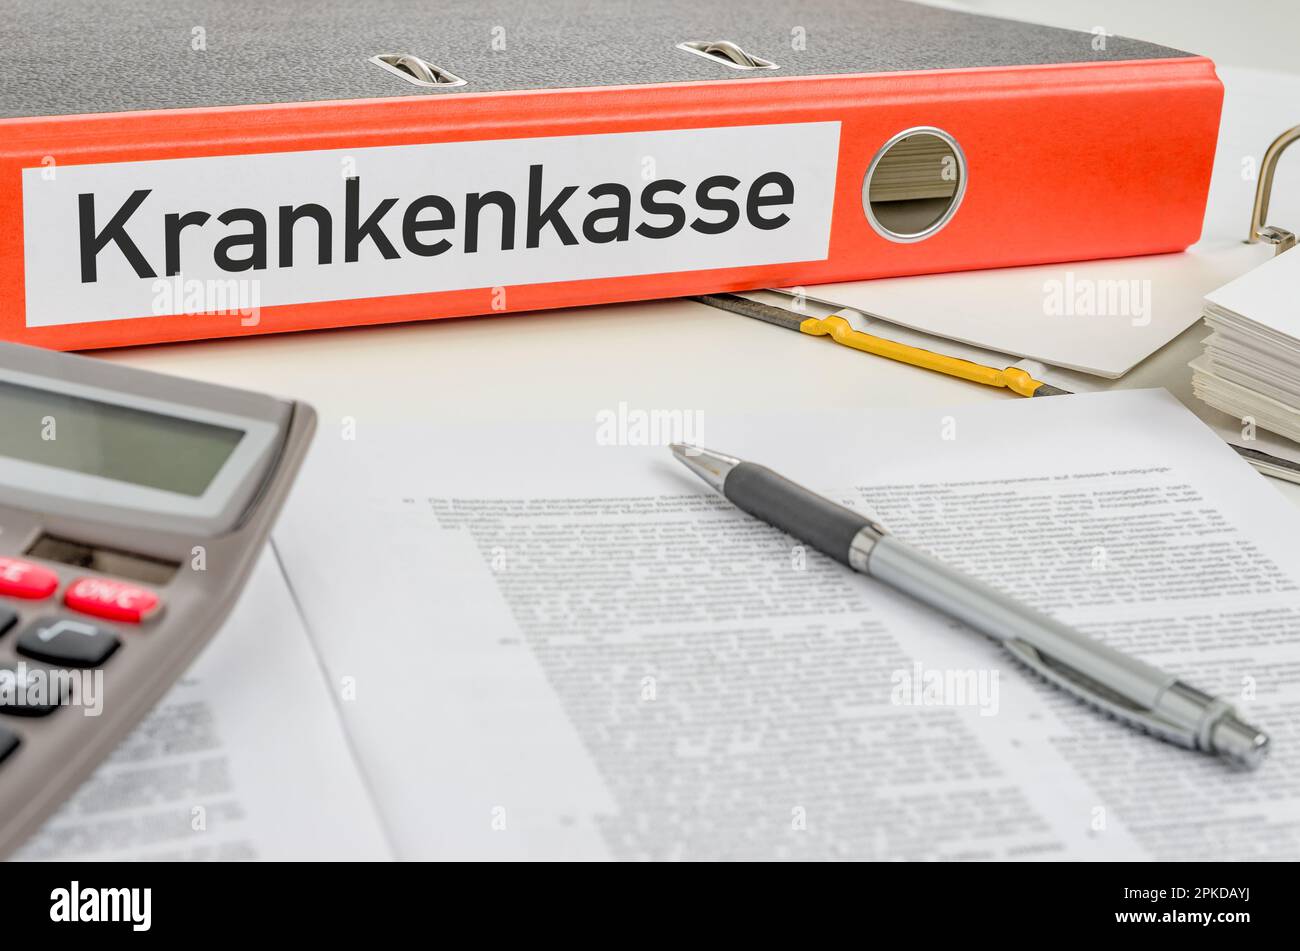 Un dossier orange avec l'étiquette assurance maladie - Krankenkasse (allemand) Banque D'Images